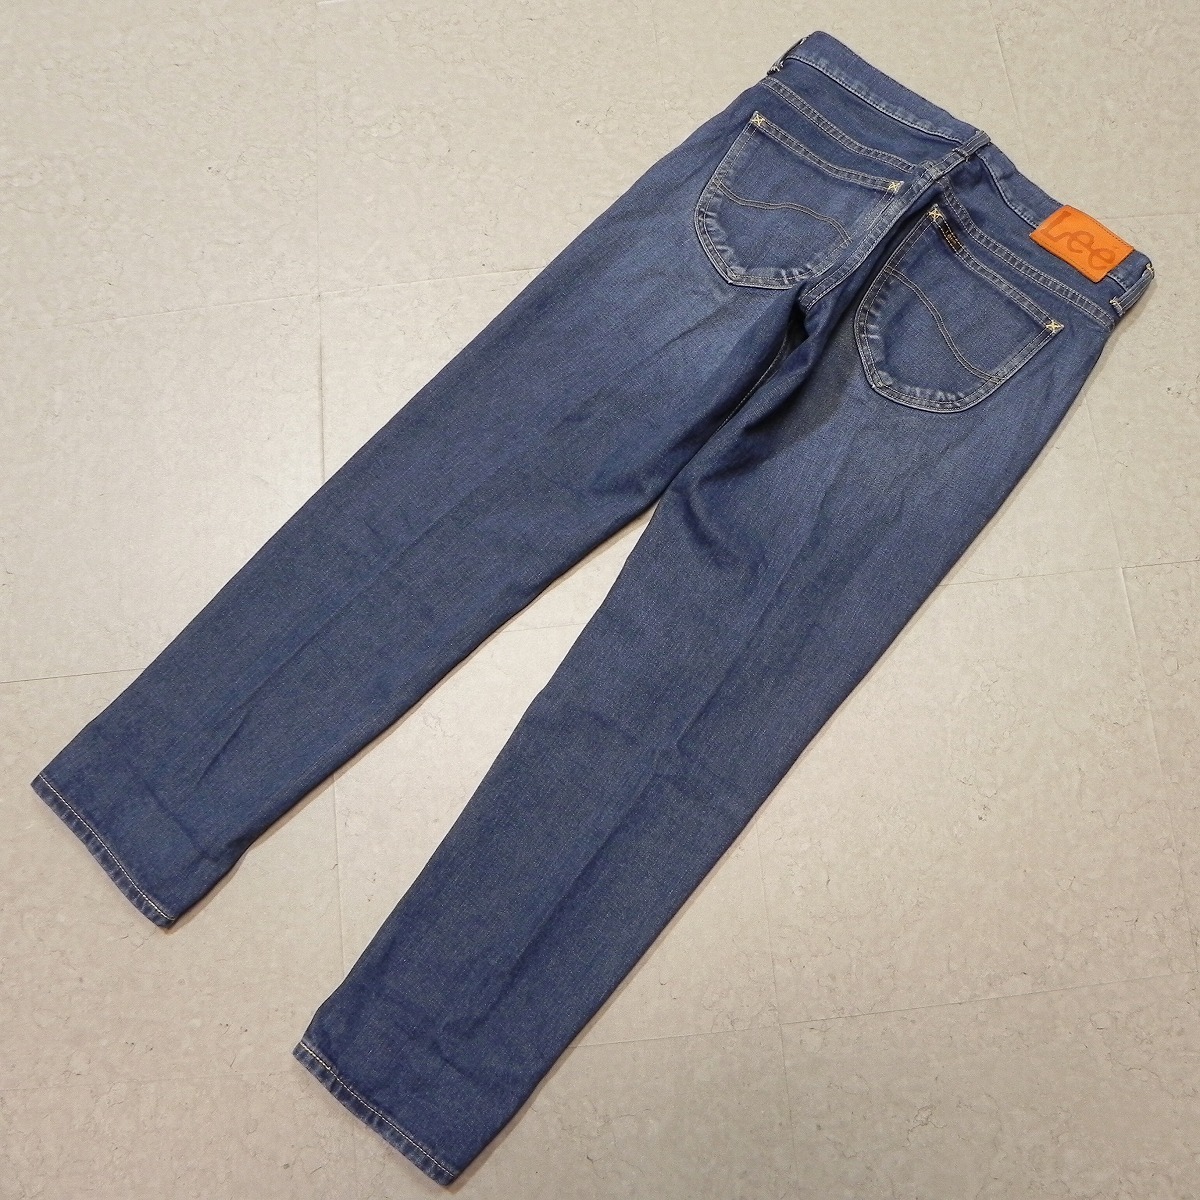 l576* обычная цена 14300 иен + налог # Lee Lee обтягивающий tepa-do аккуратный тонкий конический (IndigoBlue) б/у обработка LL0613 джинсы S #